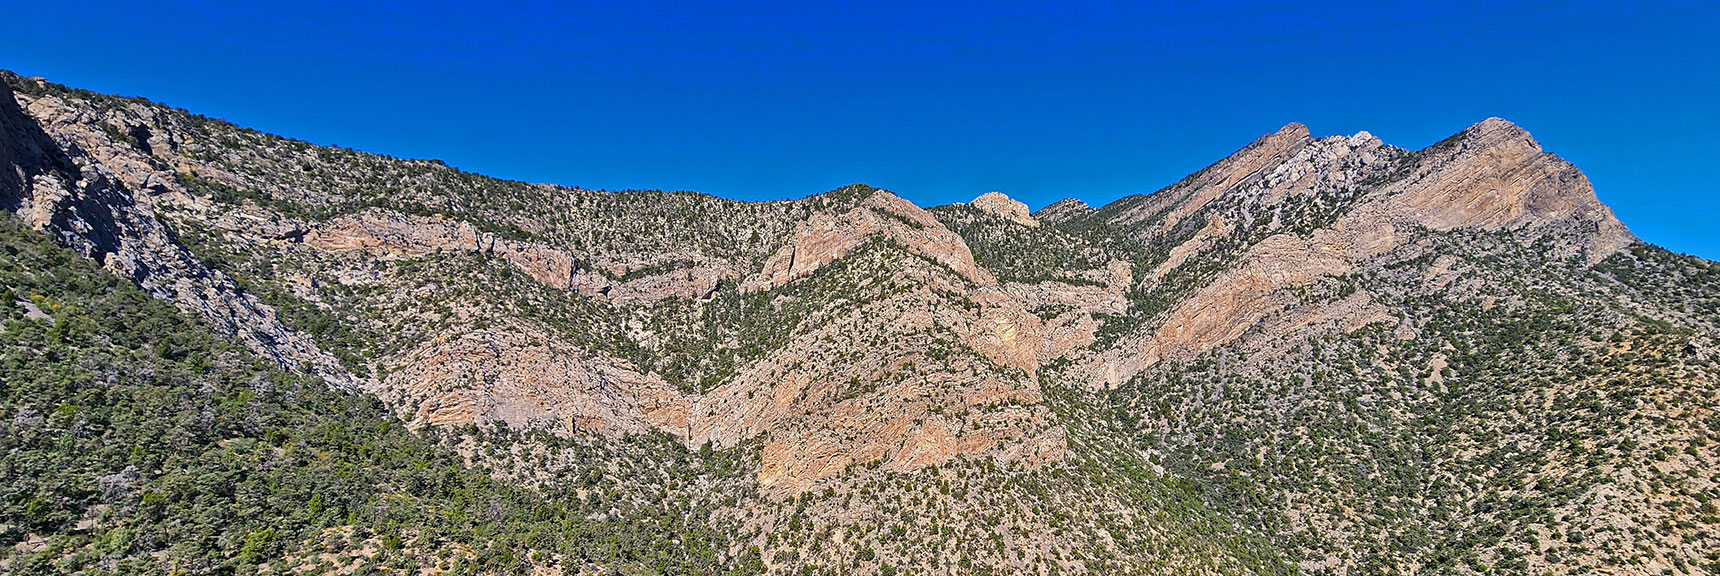 Wilson Ridgeline at Summit of Switchback Spring Canyon | Switchback Spring Ridge | Red Rock Canyon, Nevada